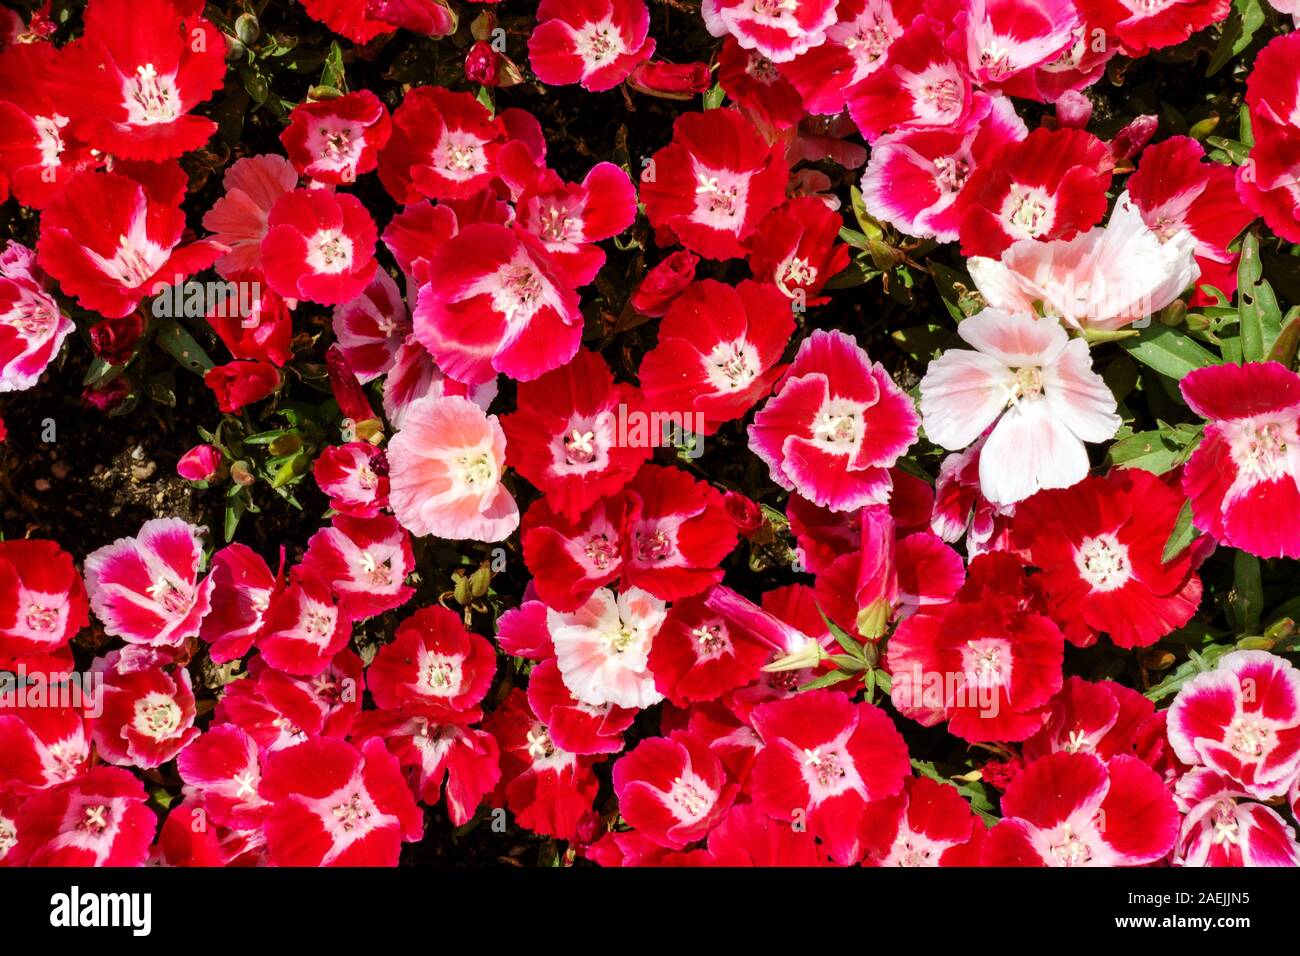 Dwarf Godetia 'Scarlet' Red flowers Stock Photo